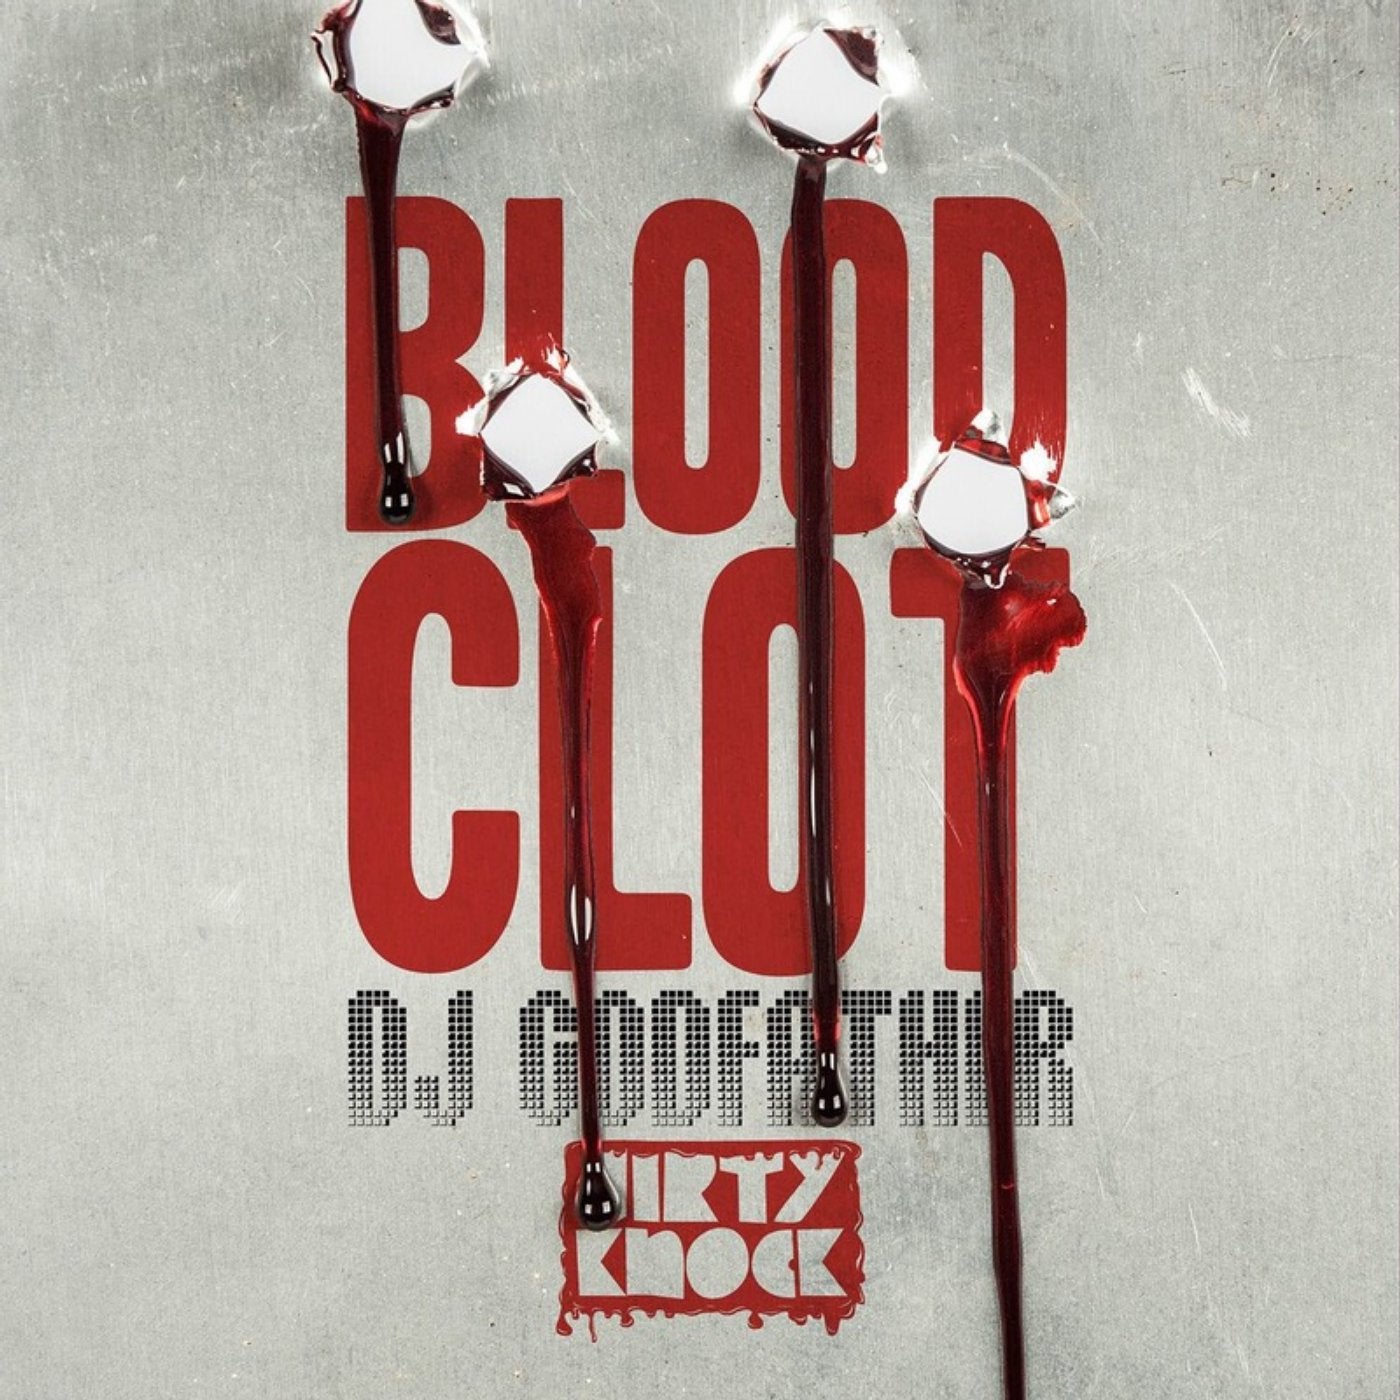 Blood Clot